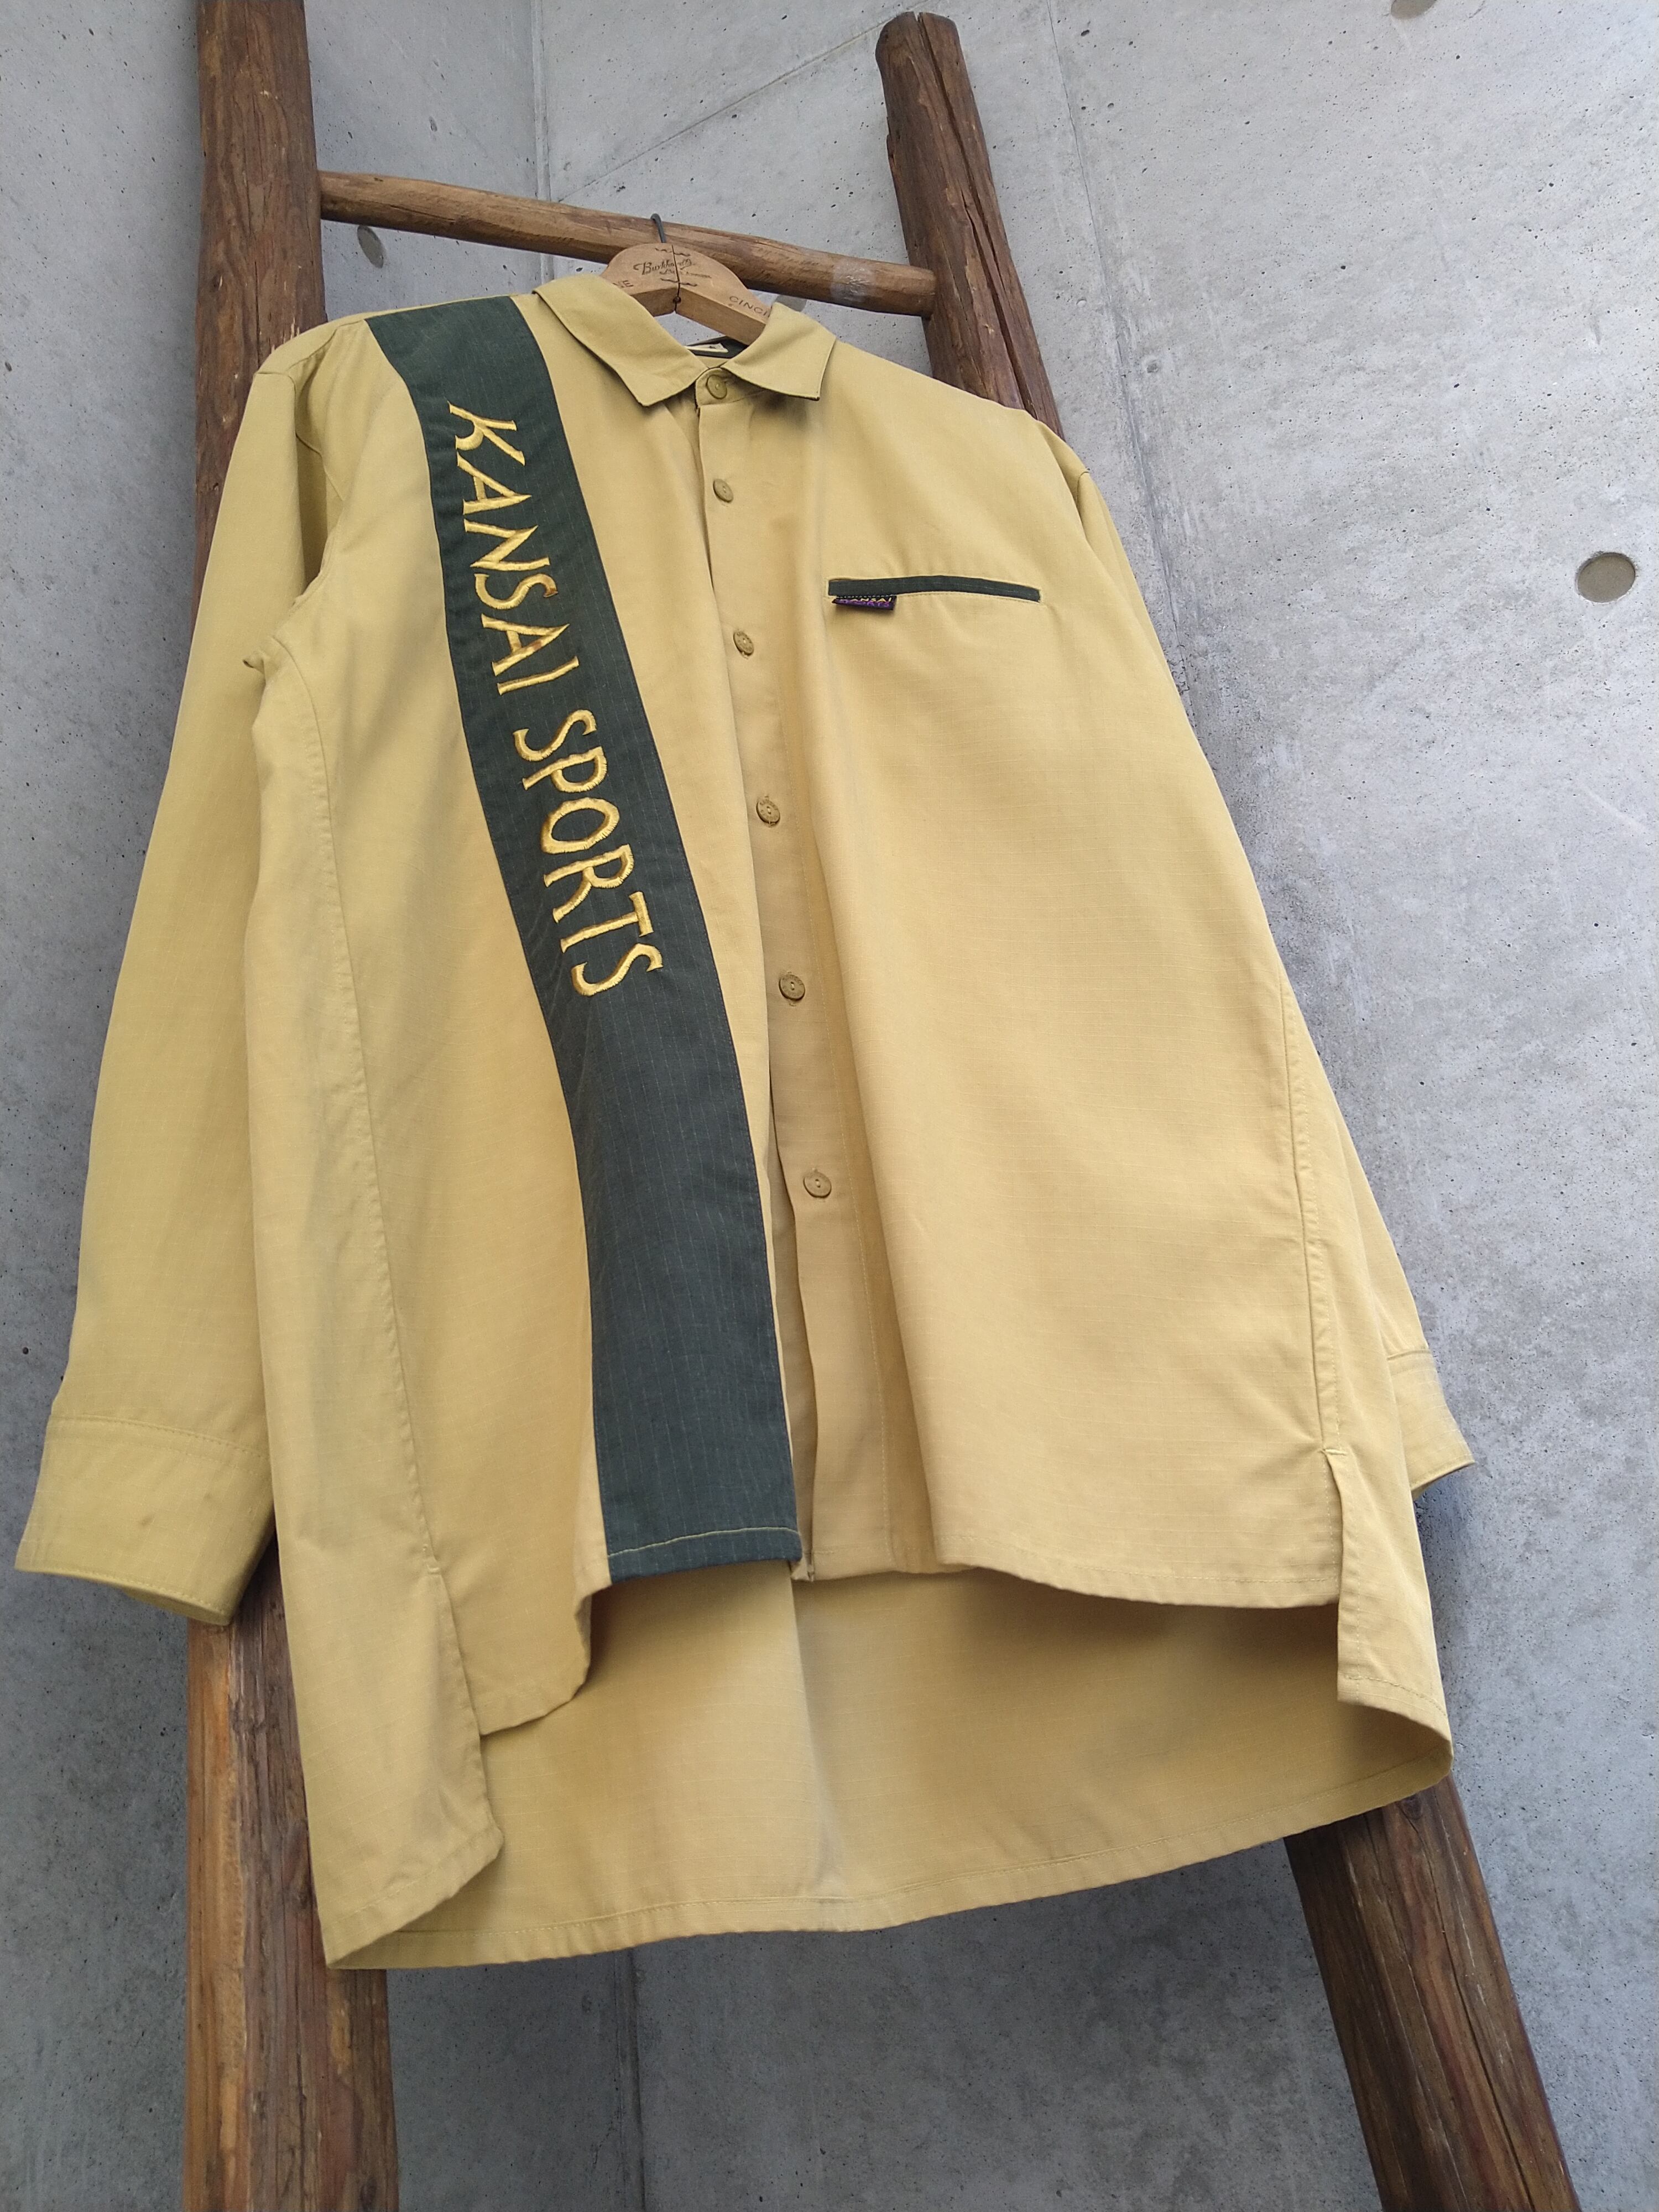 KANSAI SPORTS Design Shirt | 古着屋 FRONT